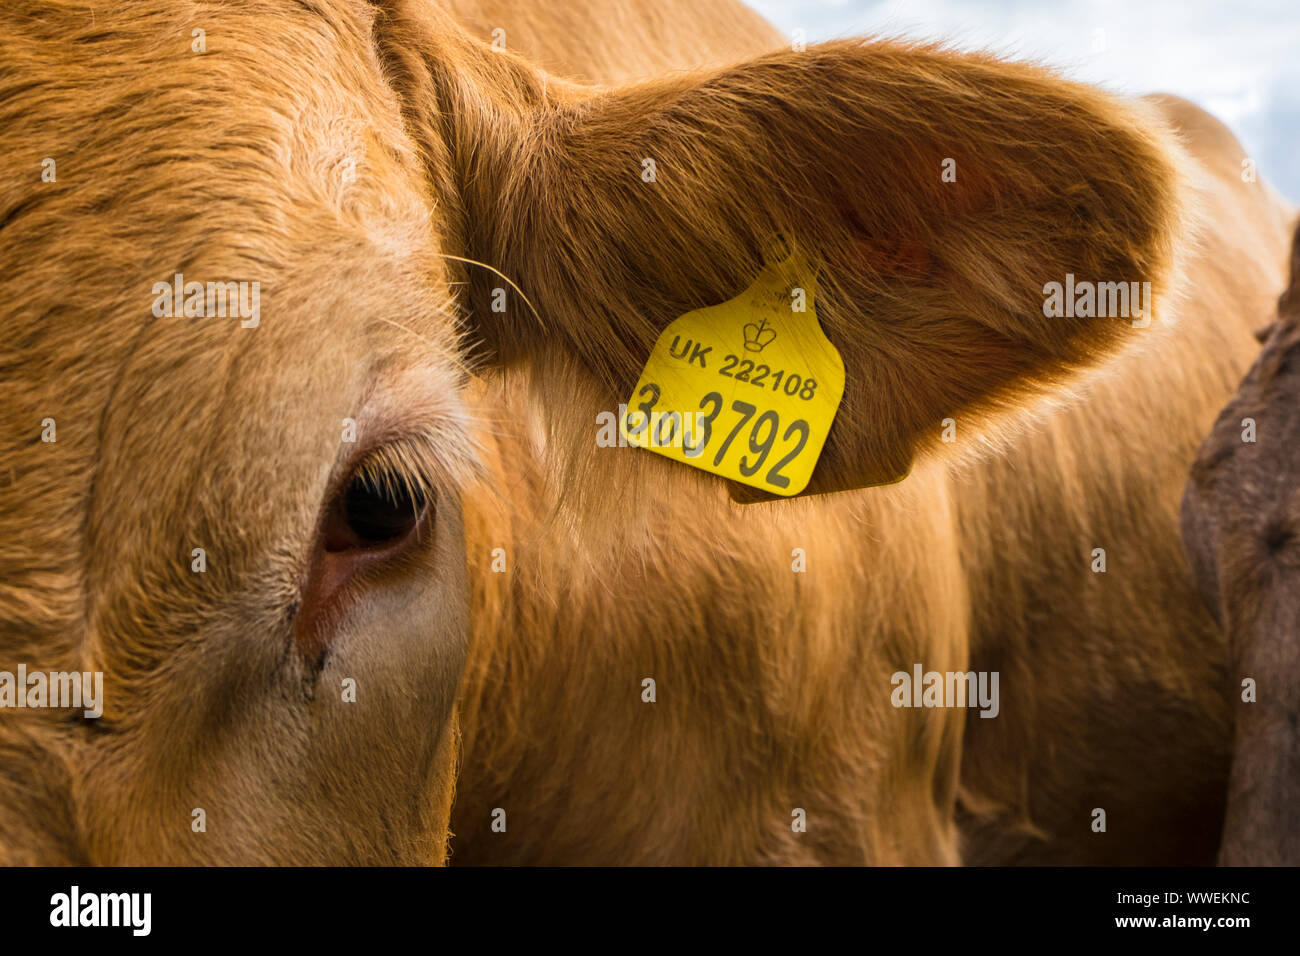 Britisches Rind-Rind, das mit einem UK-Tag im Ohr markiert ist. Eine Farm in Suffolk, Großbritannien. Stockfoto